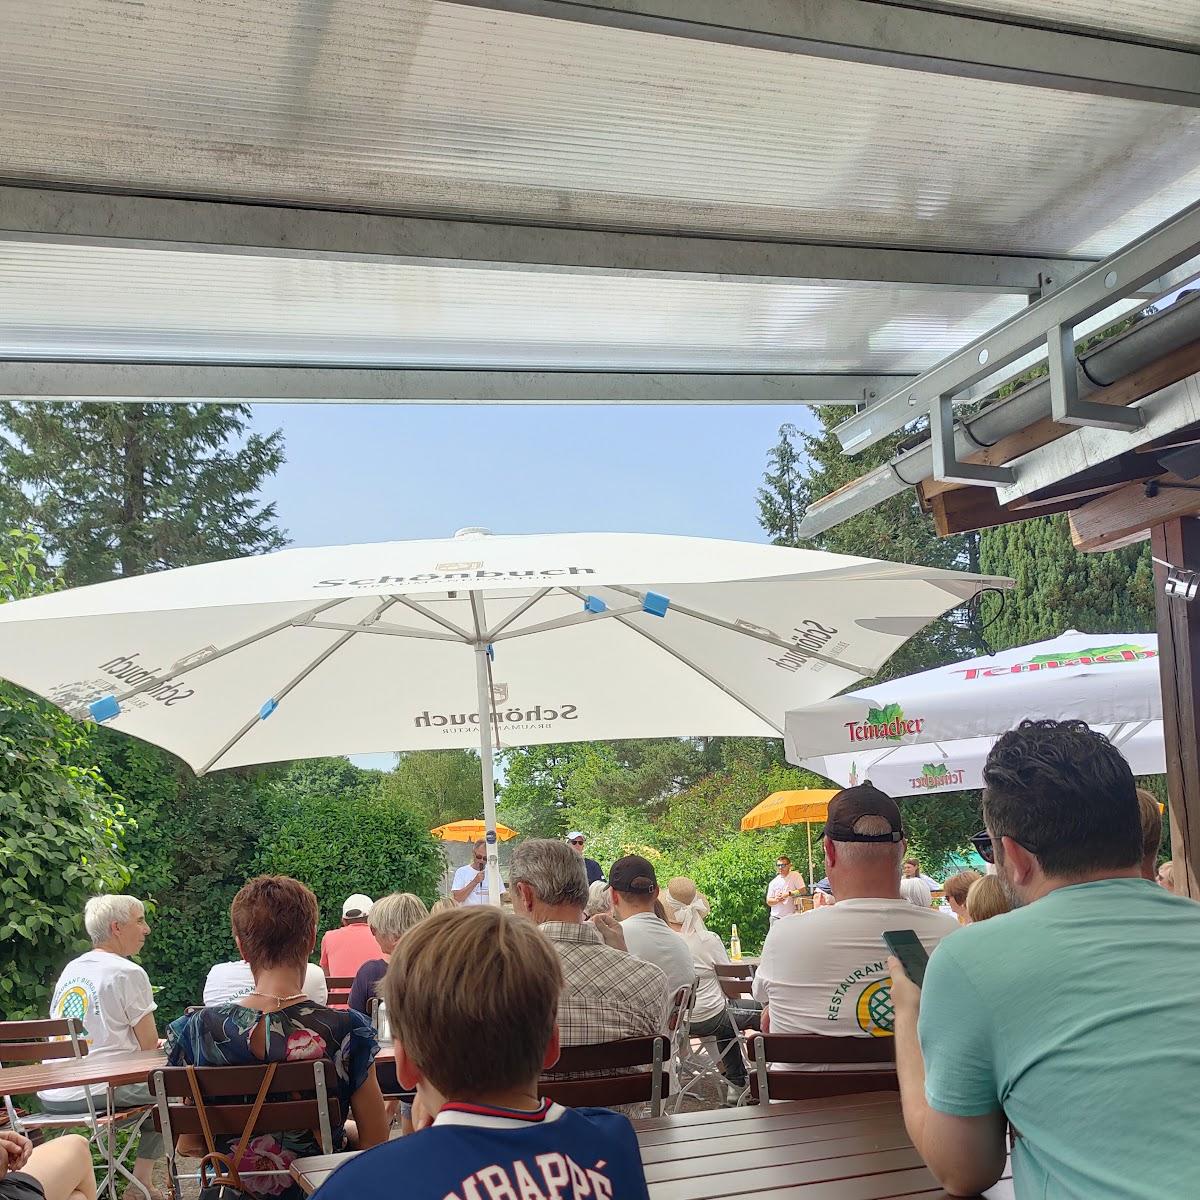 Restaurant "Tennis-Club" in Aidlingen